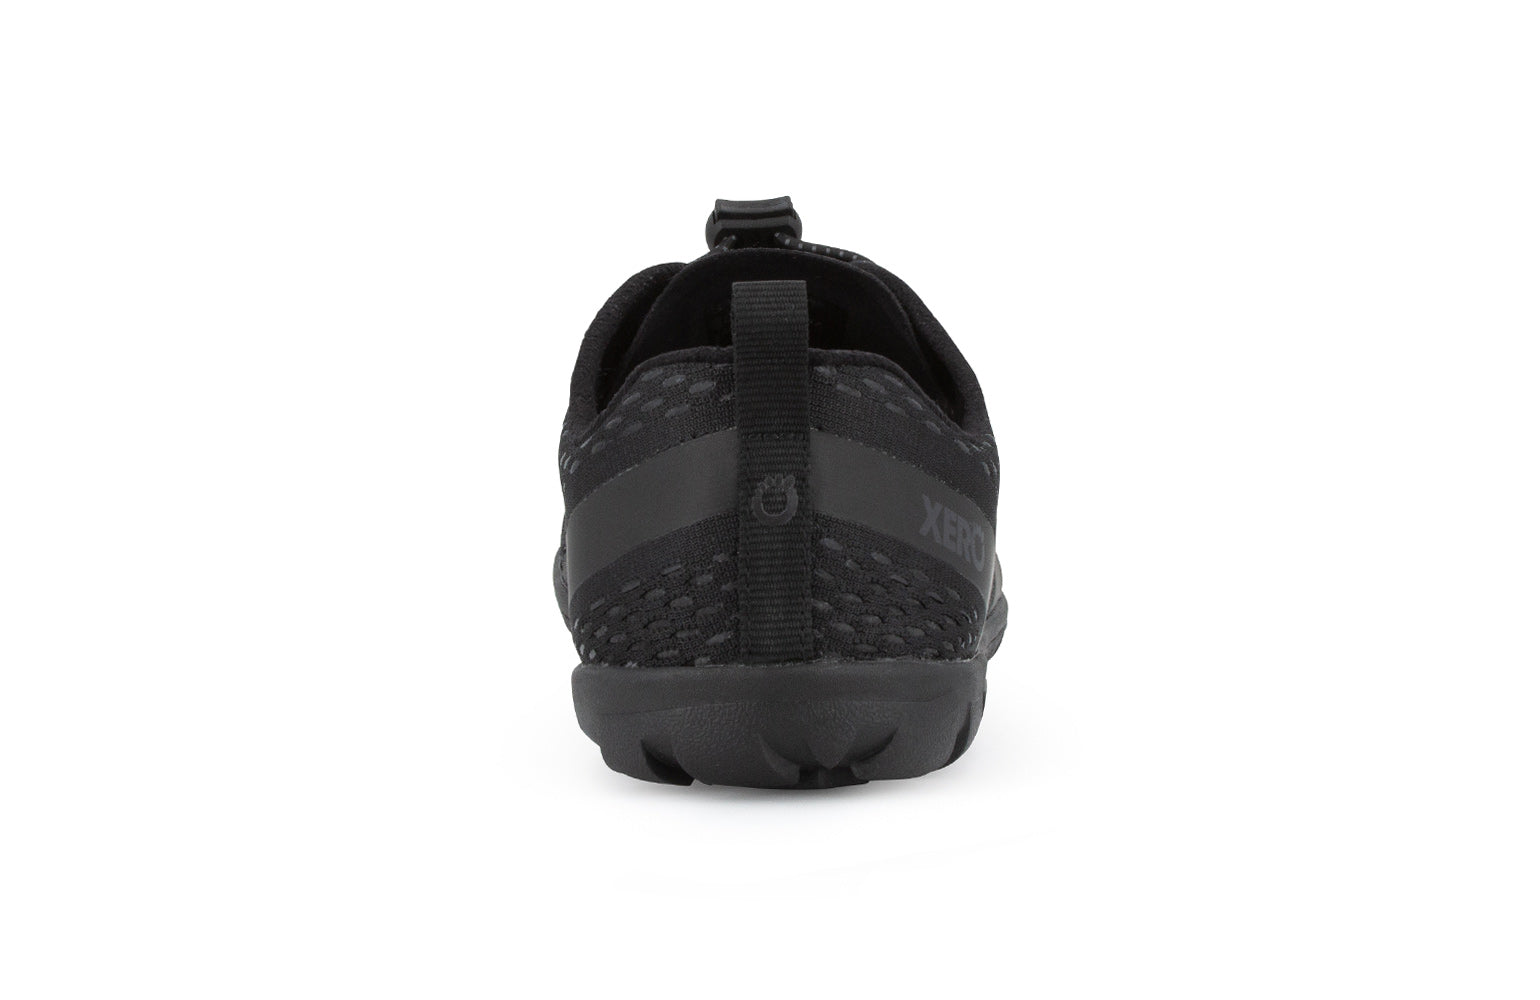 Xero Shoes Aqua X Sport barfods vand træningssko til mænd i farven black, bagfra